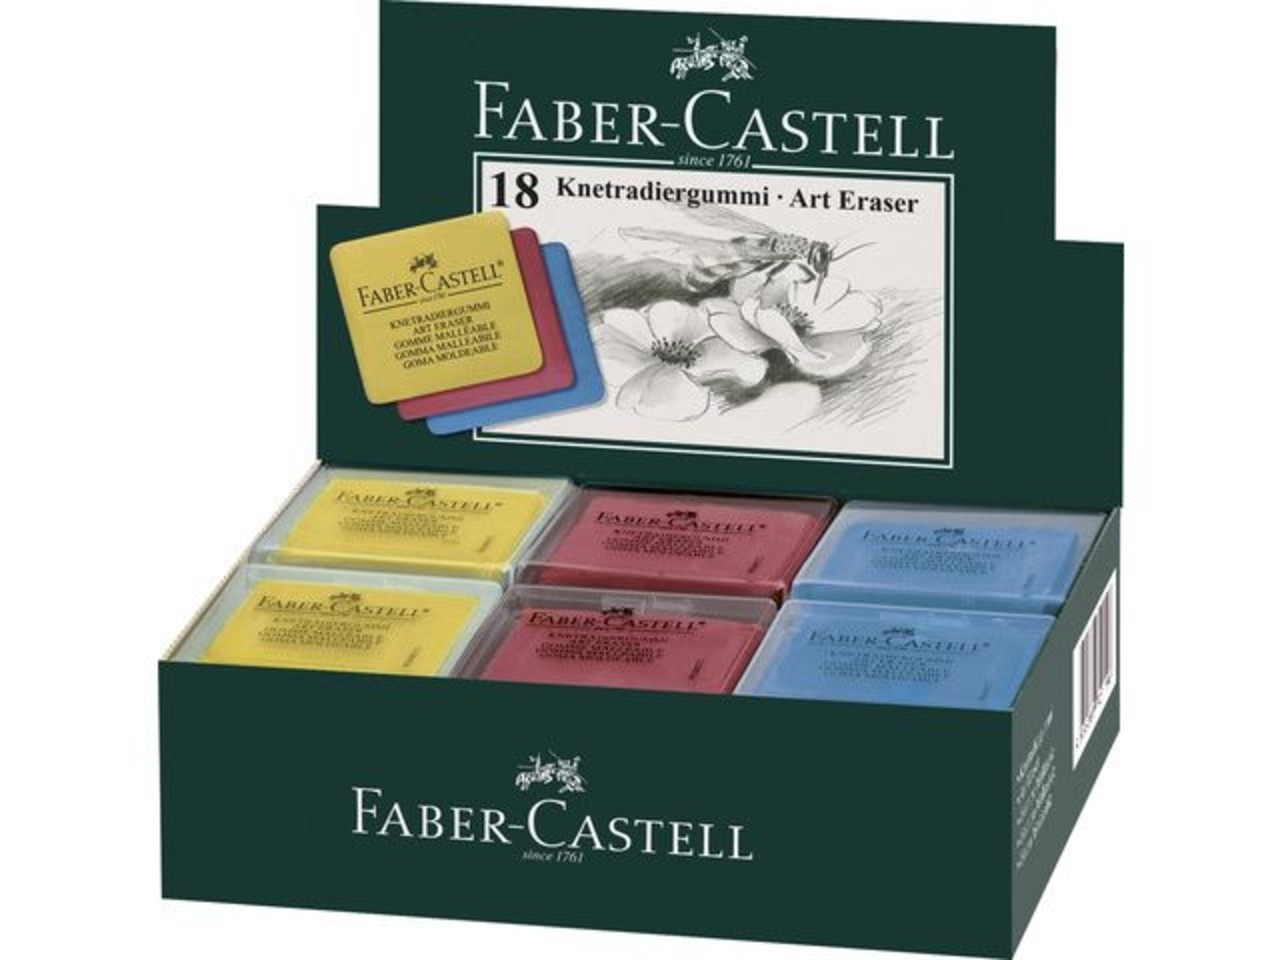 Faber-Castell 177090 Equerre + poignée FC blister20cm 